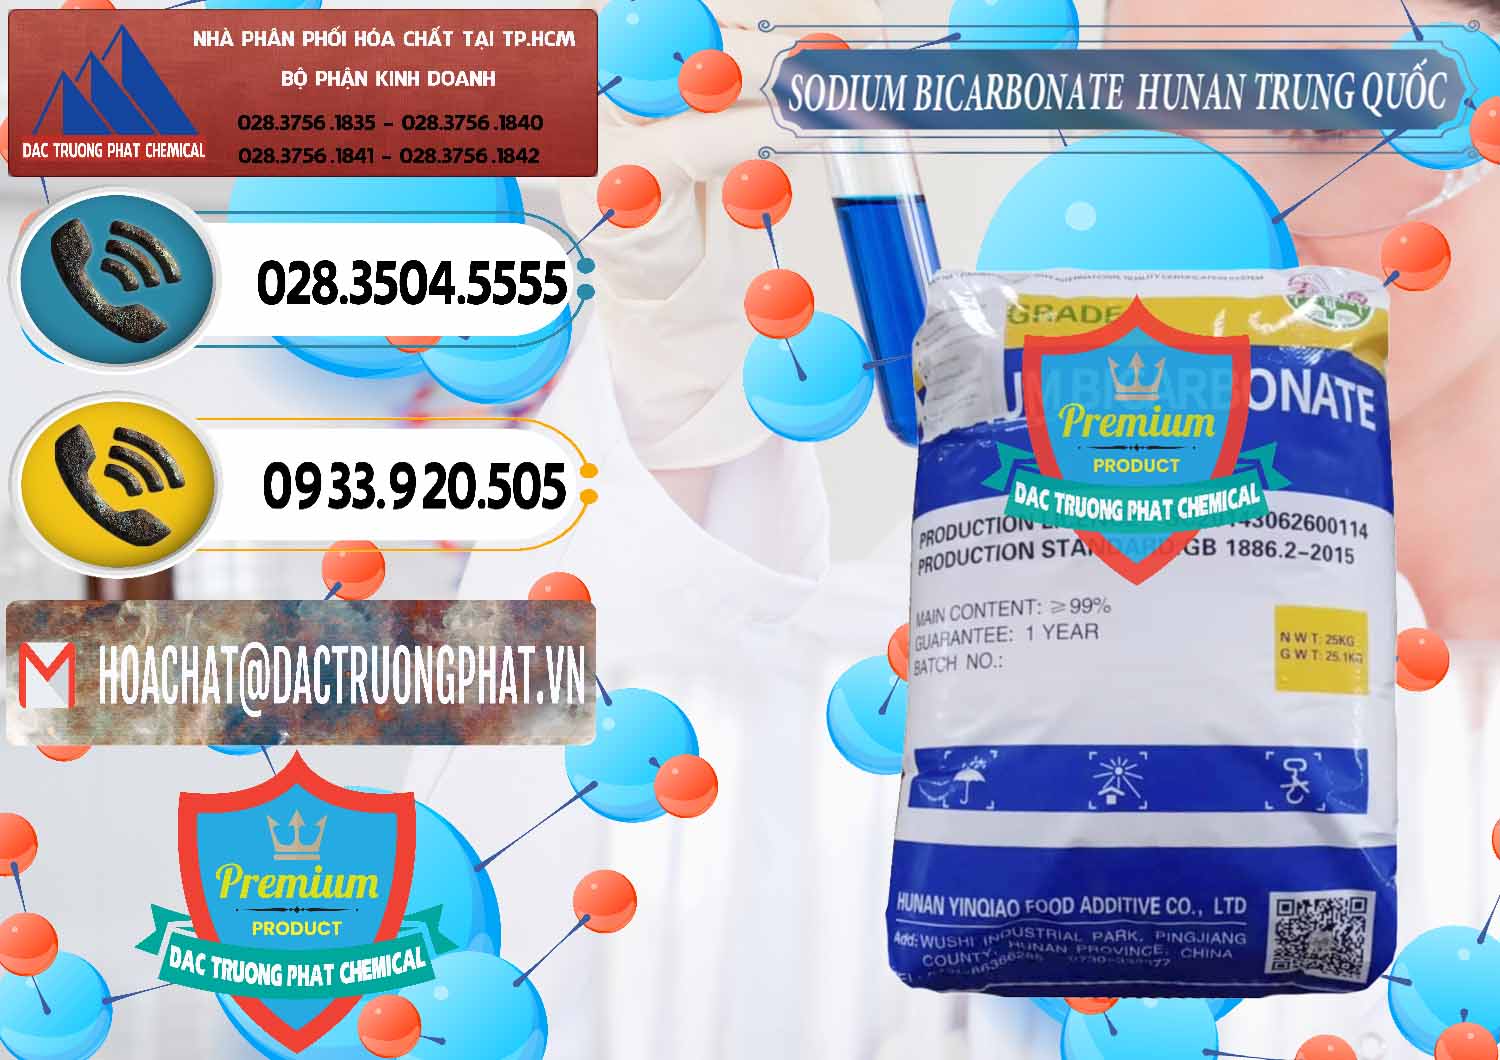 Nơi chuyên bán ( phân phối ) Sodium Bicarbonate – Bicar NaHCO3 Hunan Trung Quốc China - 0405 - Cty chuyên bán ( phân phối ) hóa chất tại TP.HCM - hoachatdetnhuom.vn